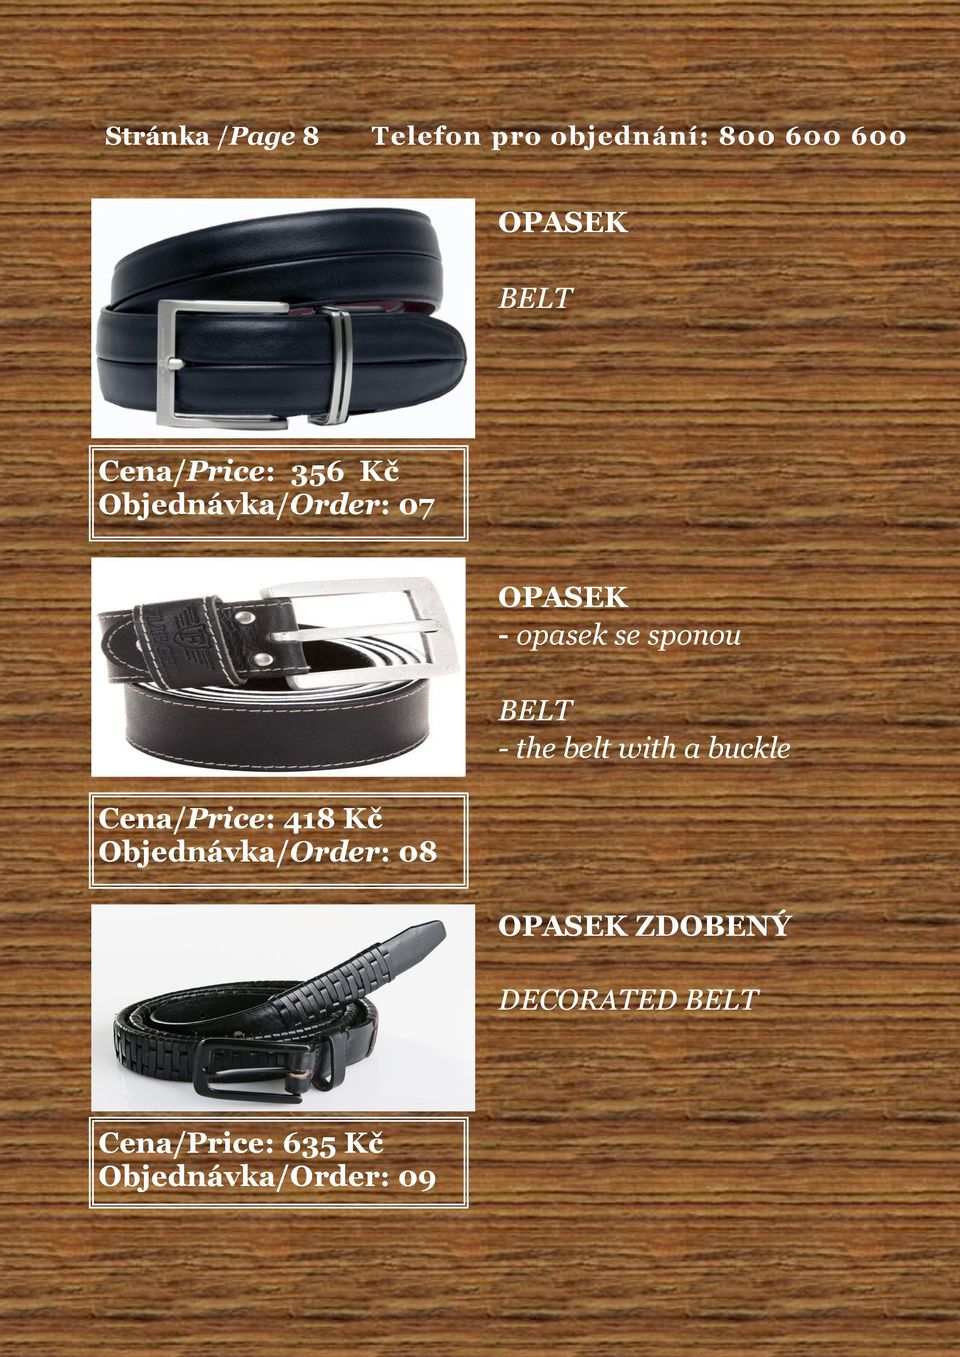 belt with a buckle Cena/Price: 418 Kč Objednávka/Order: 08